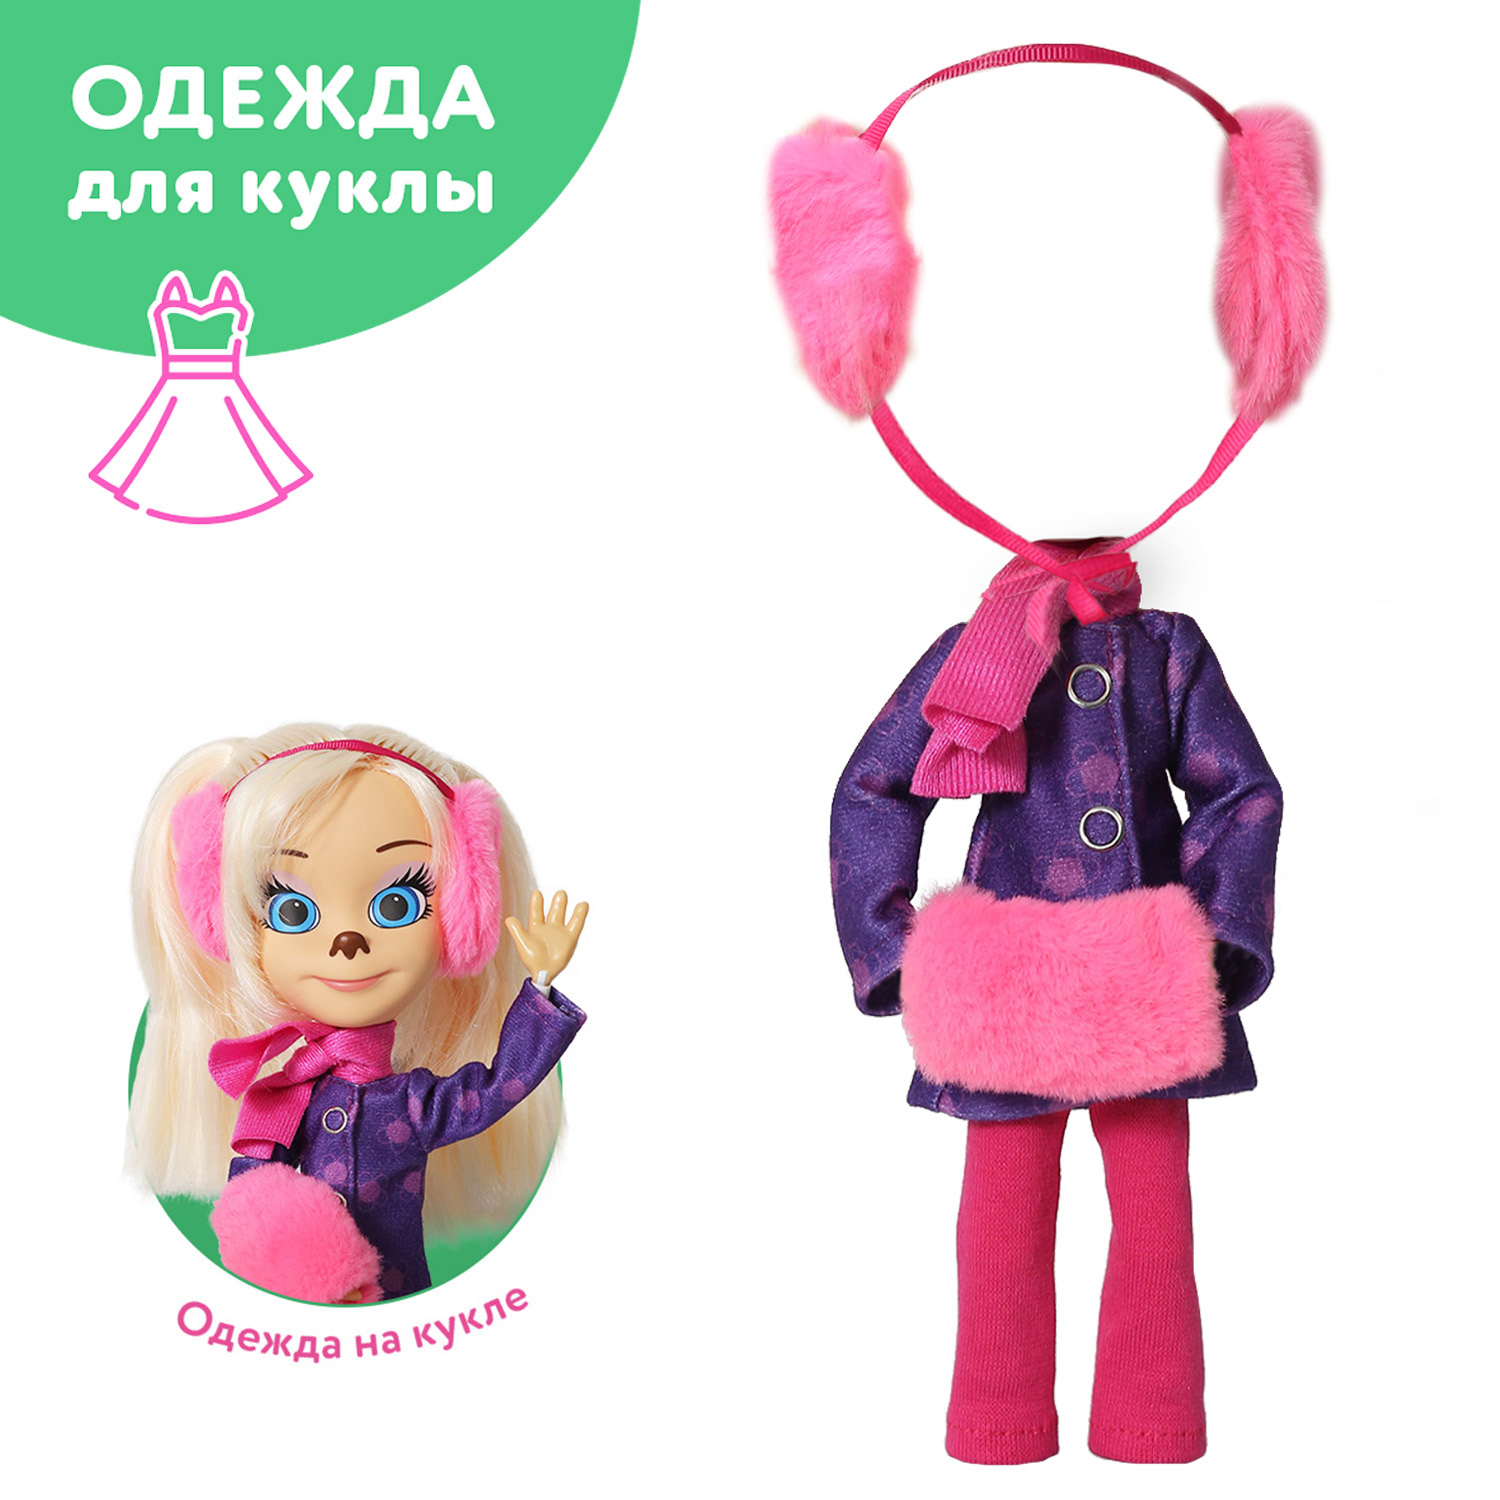 Одежда для кукол - Журналы Burda Мода для кукол купить в Шопике | Москва - 